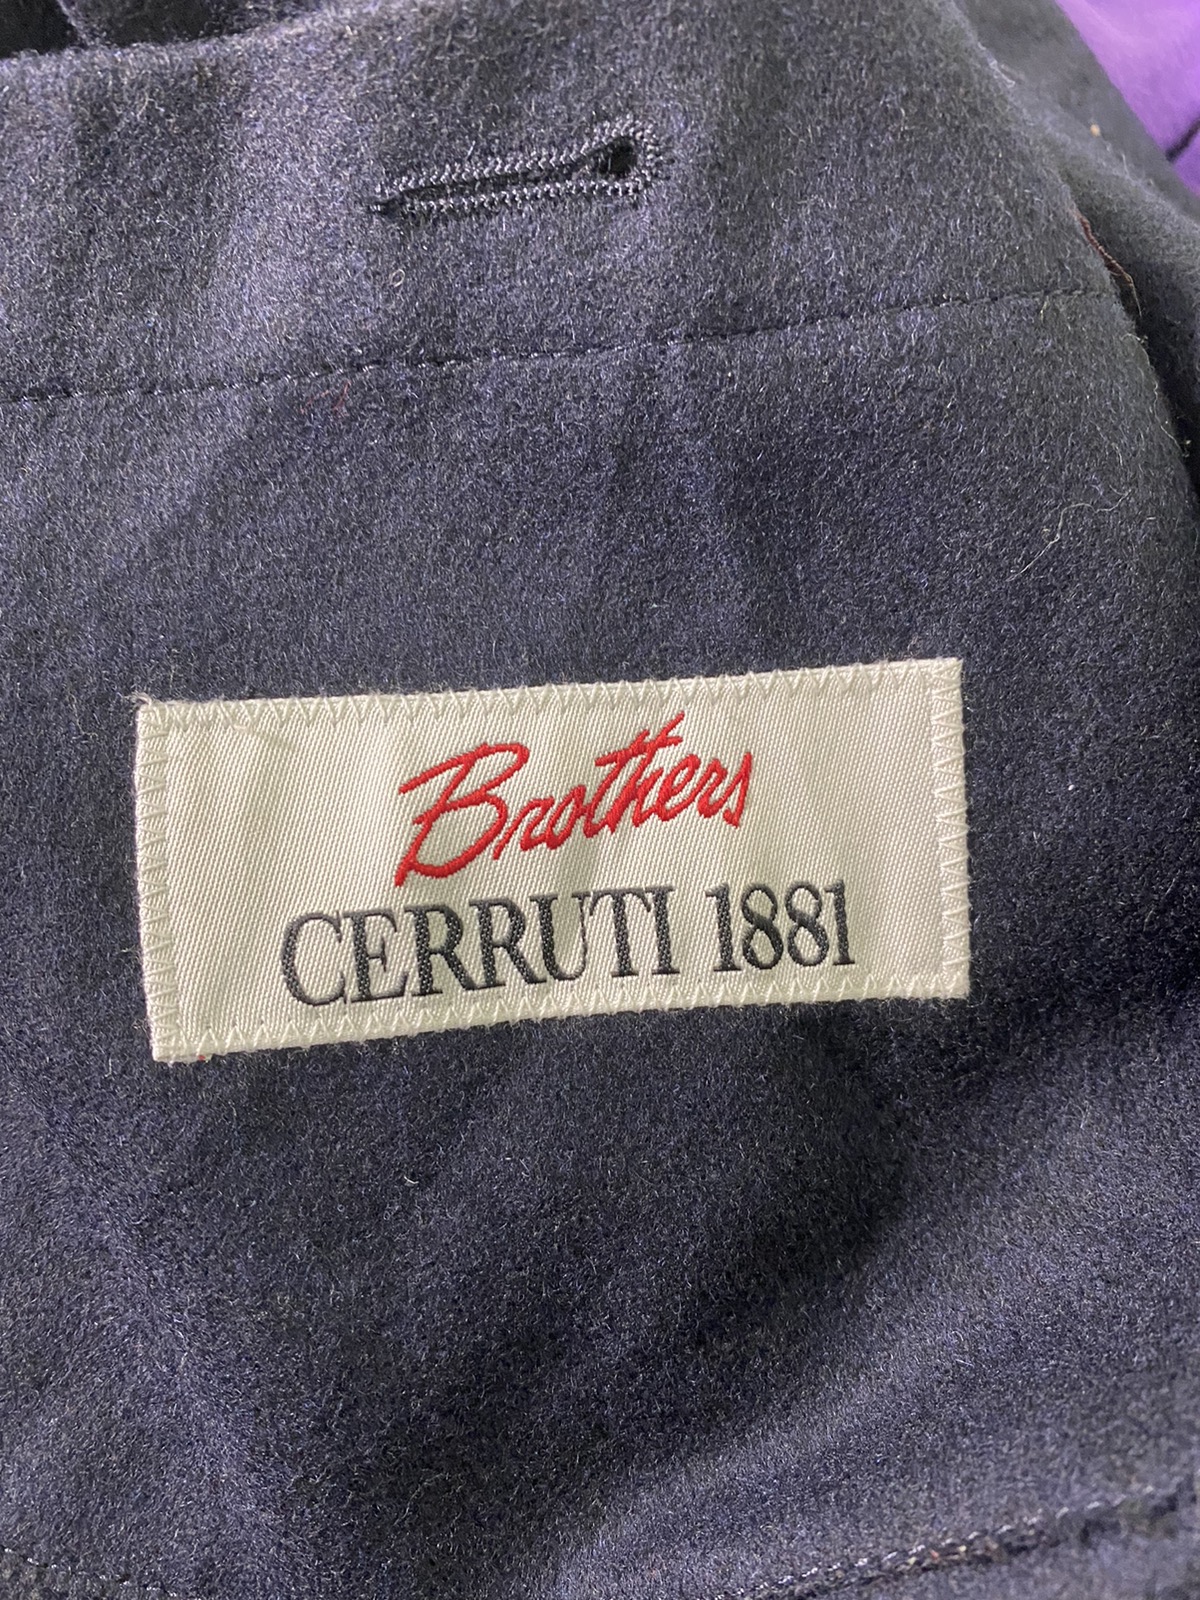 Cerruti 1881 - Brothers Cerruti 1881 Wool Jacket - 4